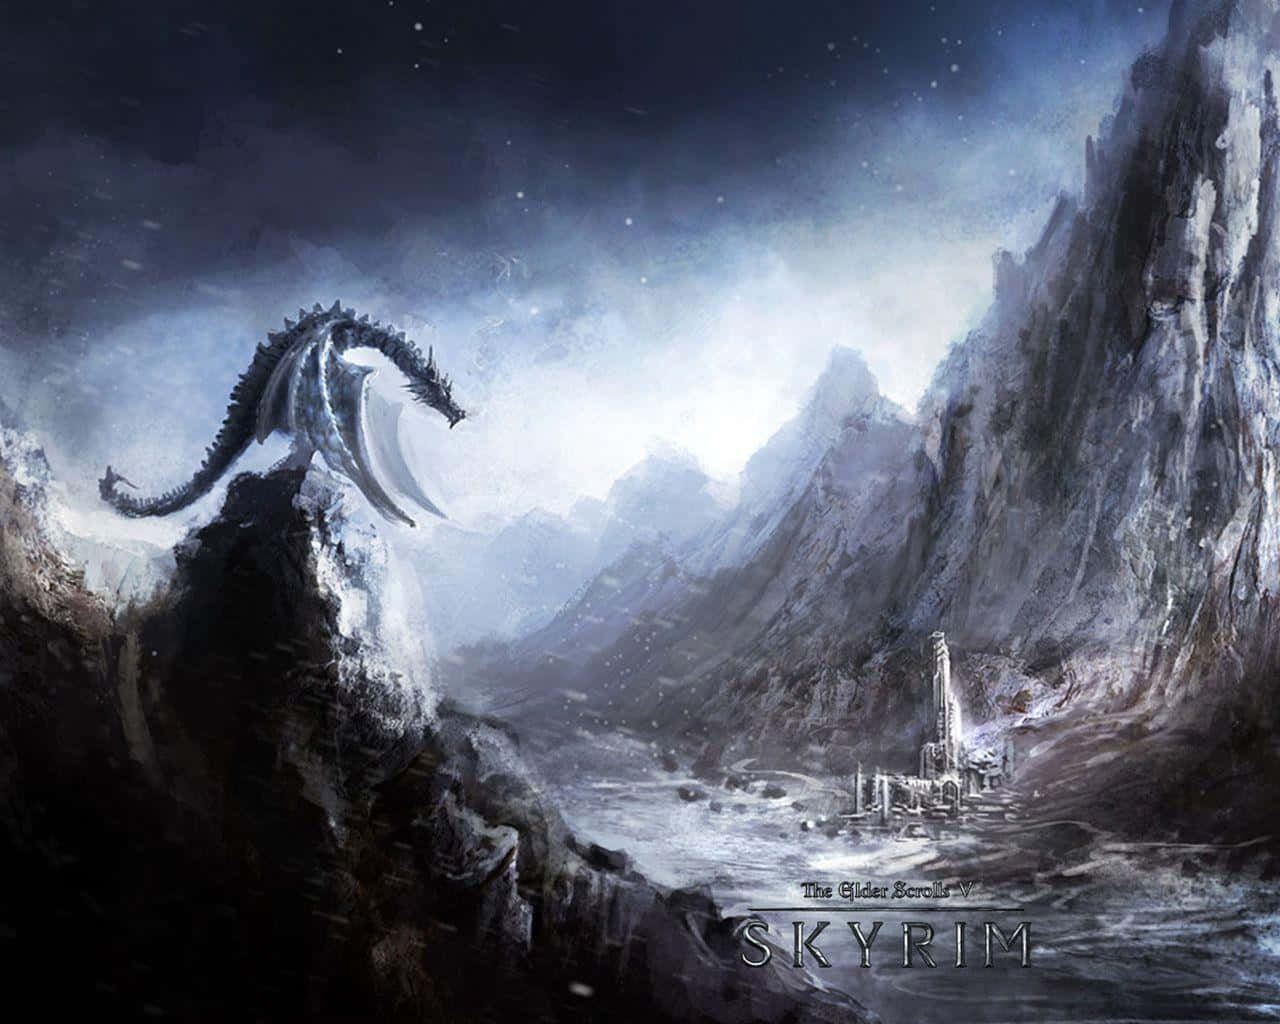 Ilmaestoso Paesaggio Di The Elder Scrolls V: Skyrim